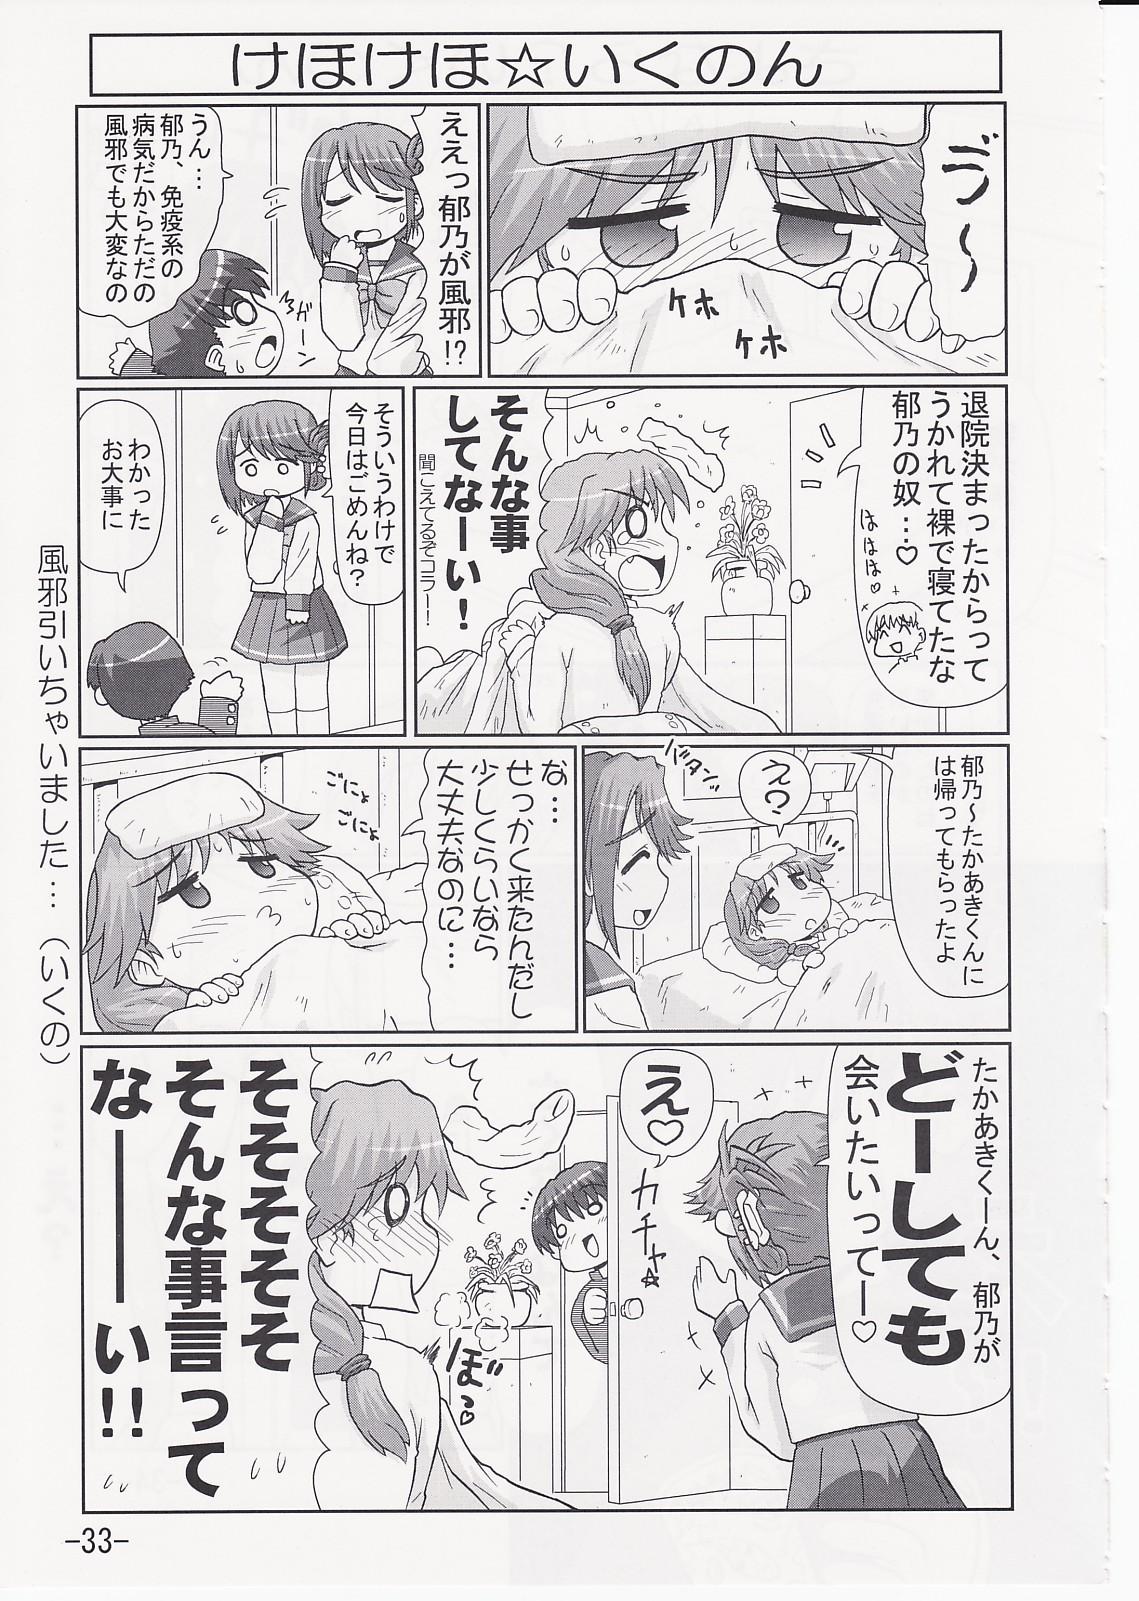 Ikunon Manga 2 31